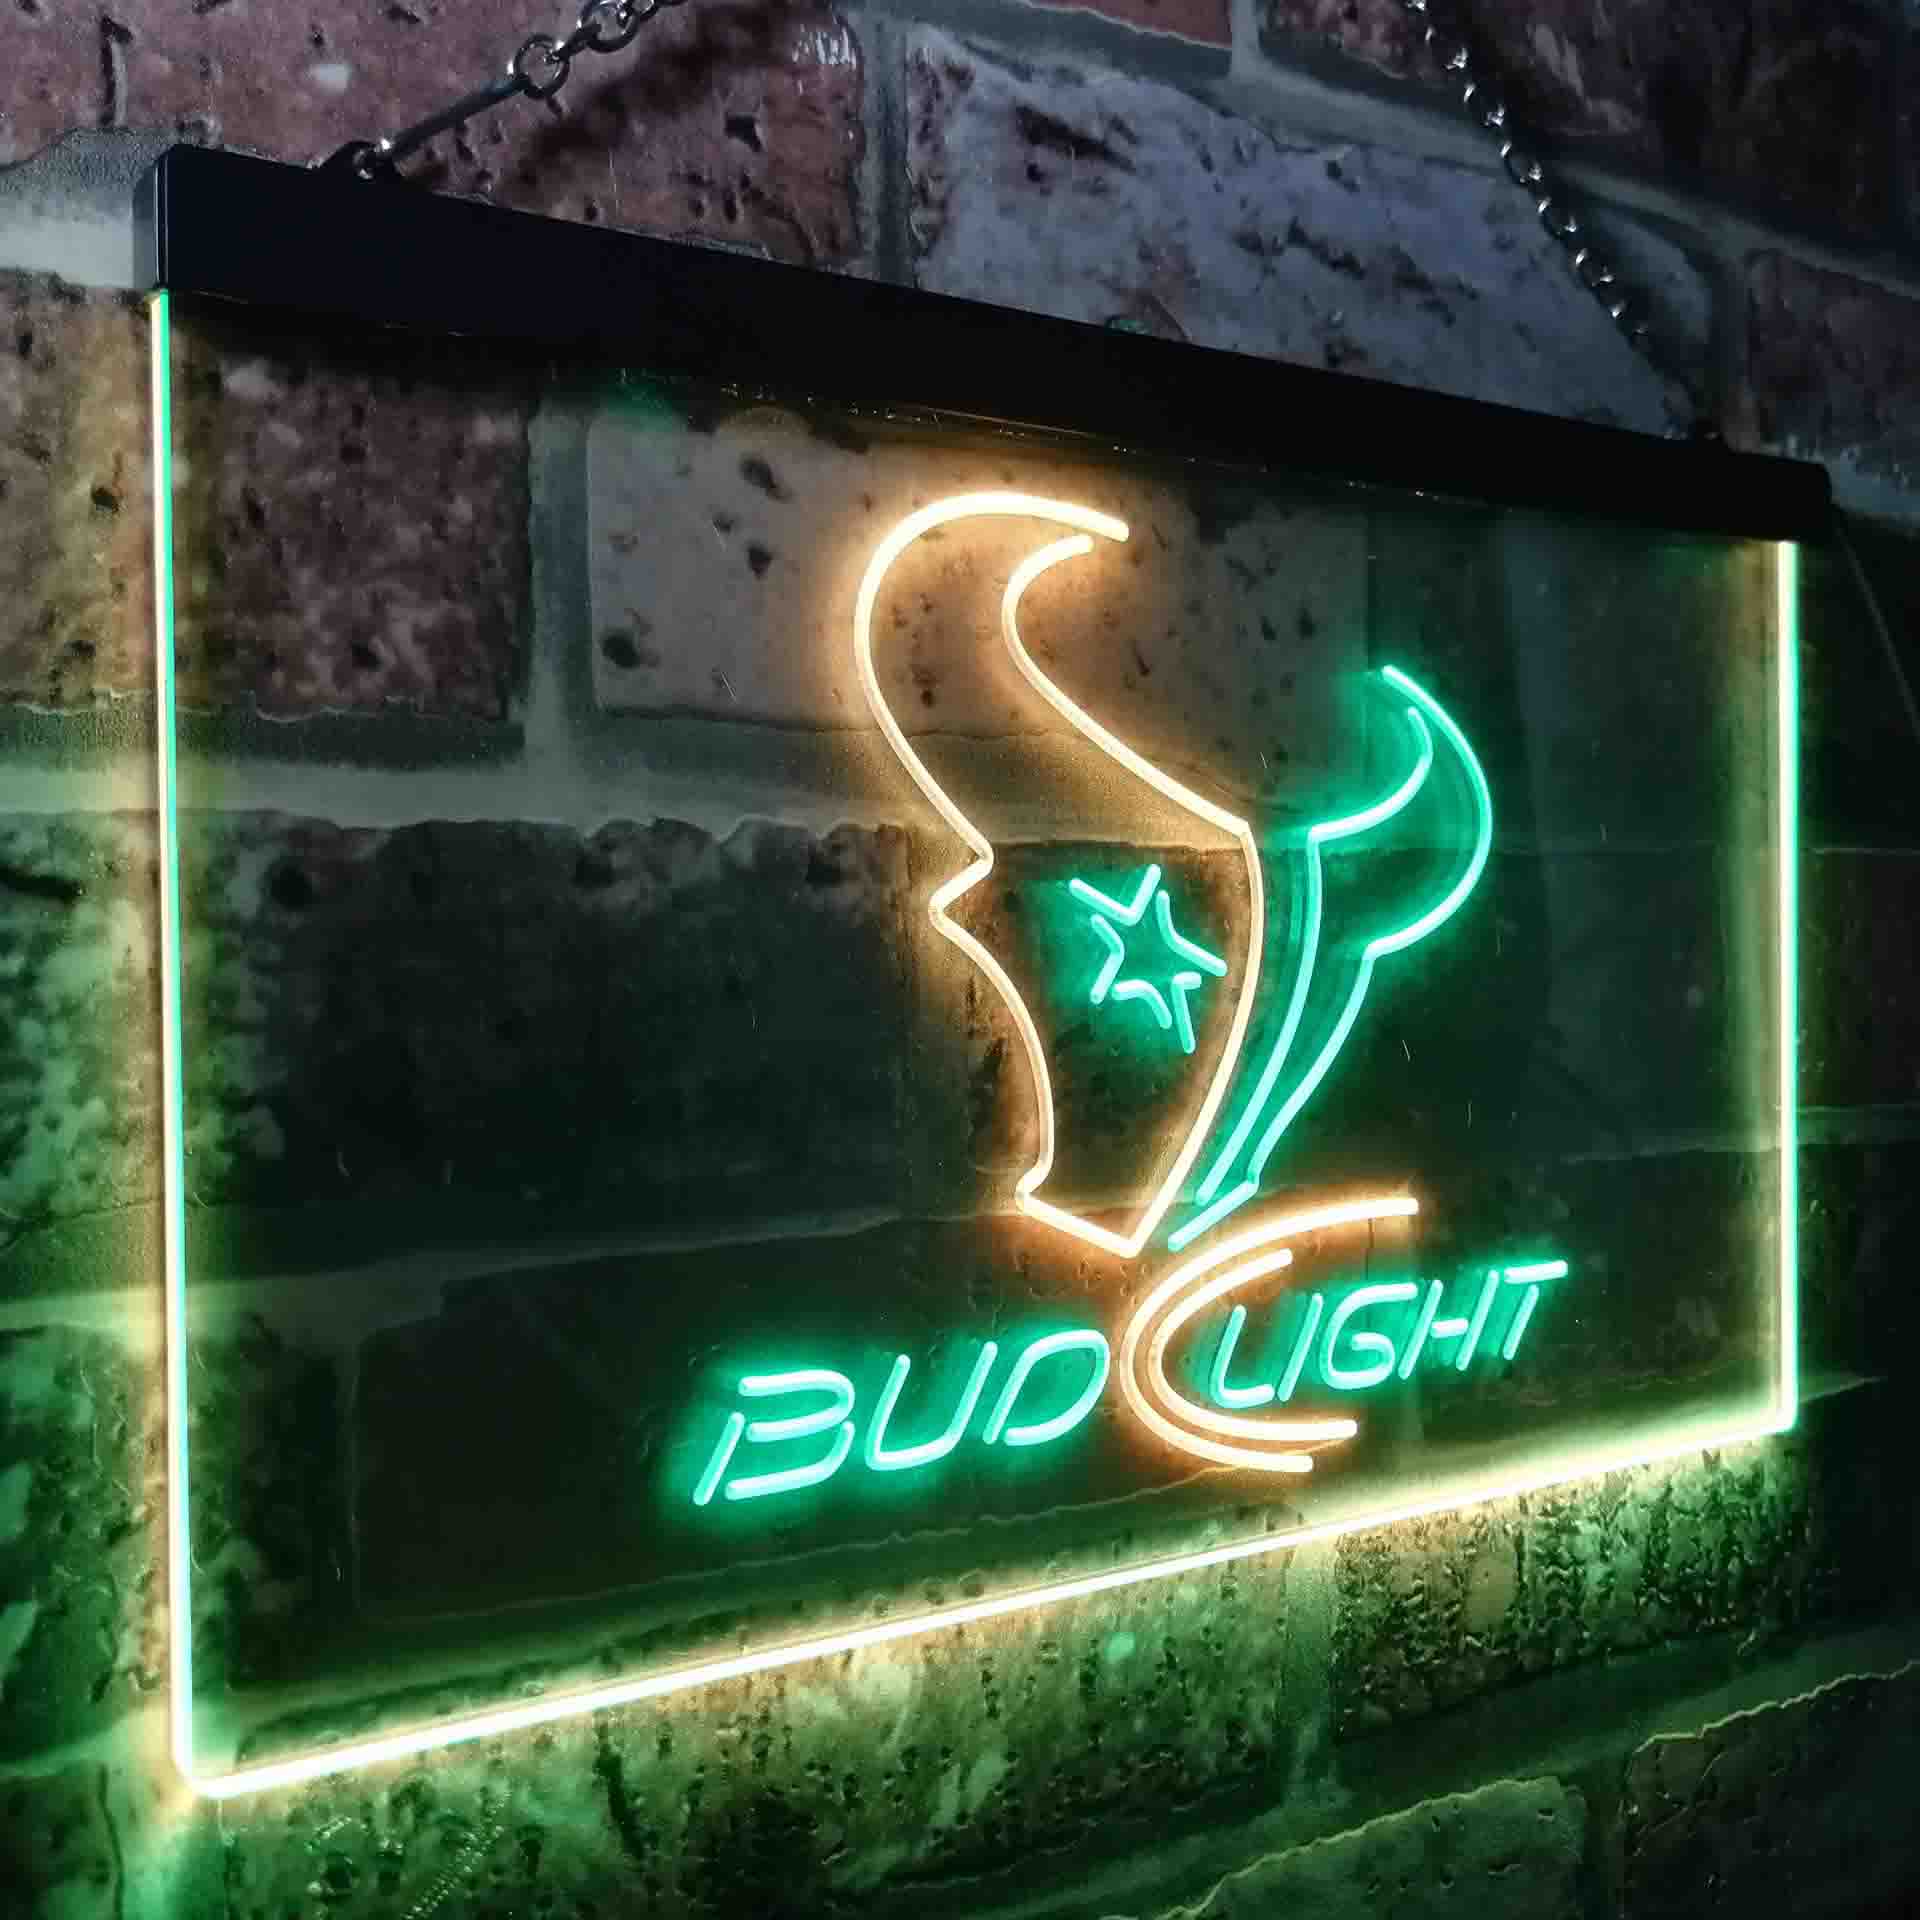 Houston Texans Bud Light LED Neon Sign